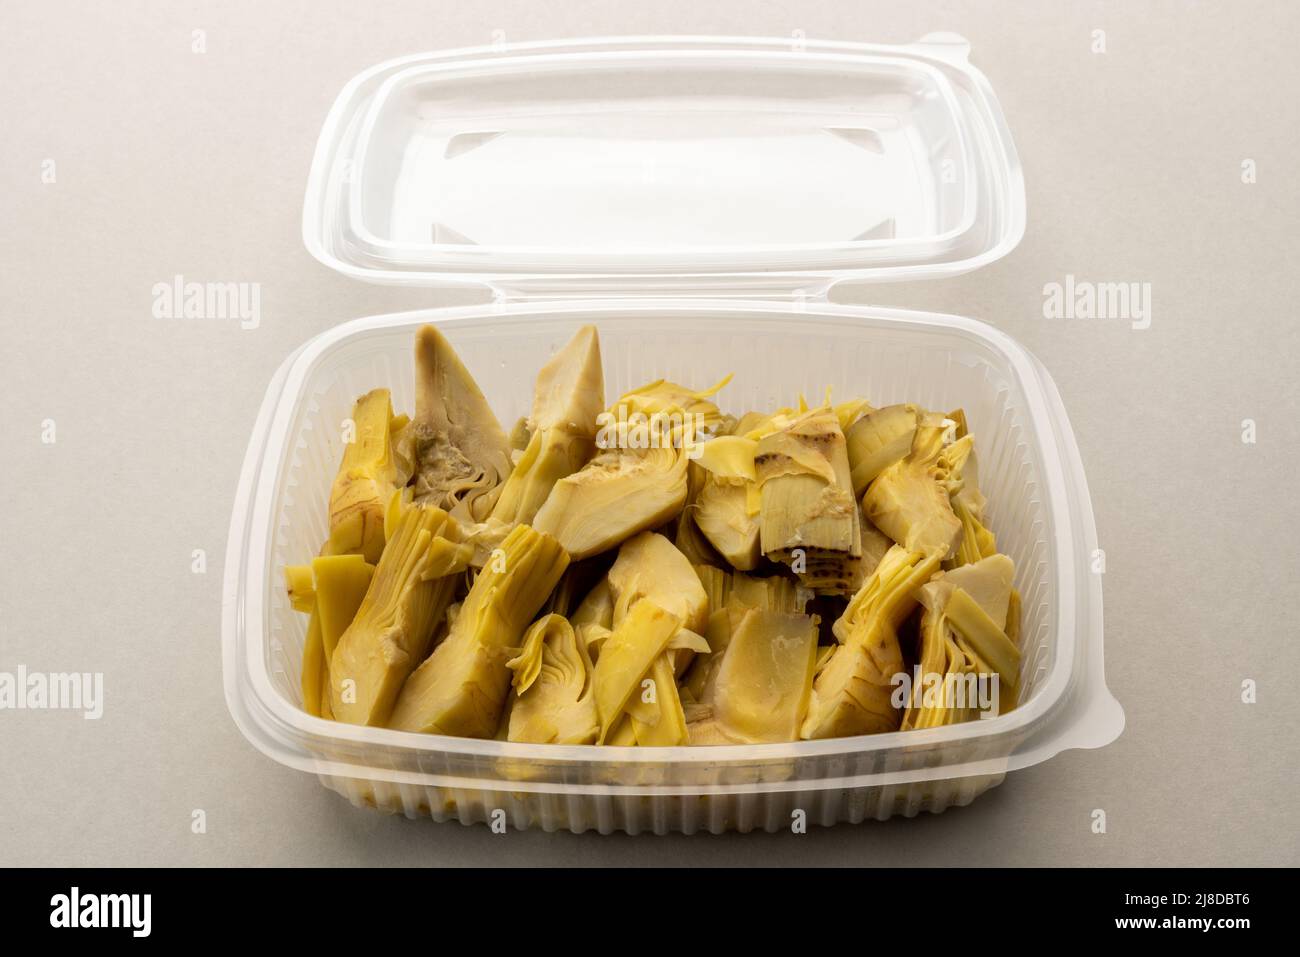 Zeppe di carciofi bolliti in scatola trasparente di plastica alimentare per refrigerazione o conservazione, su sfondo grigio chiaro Foto Stock